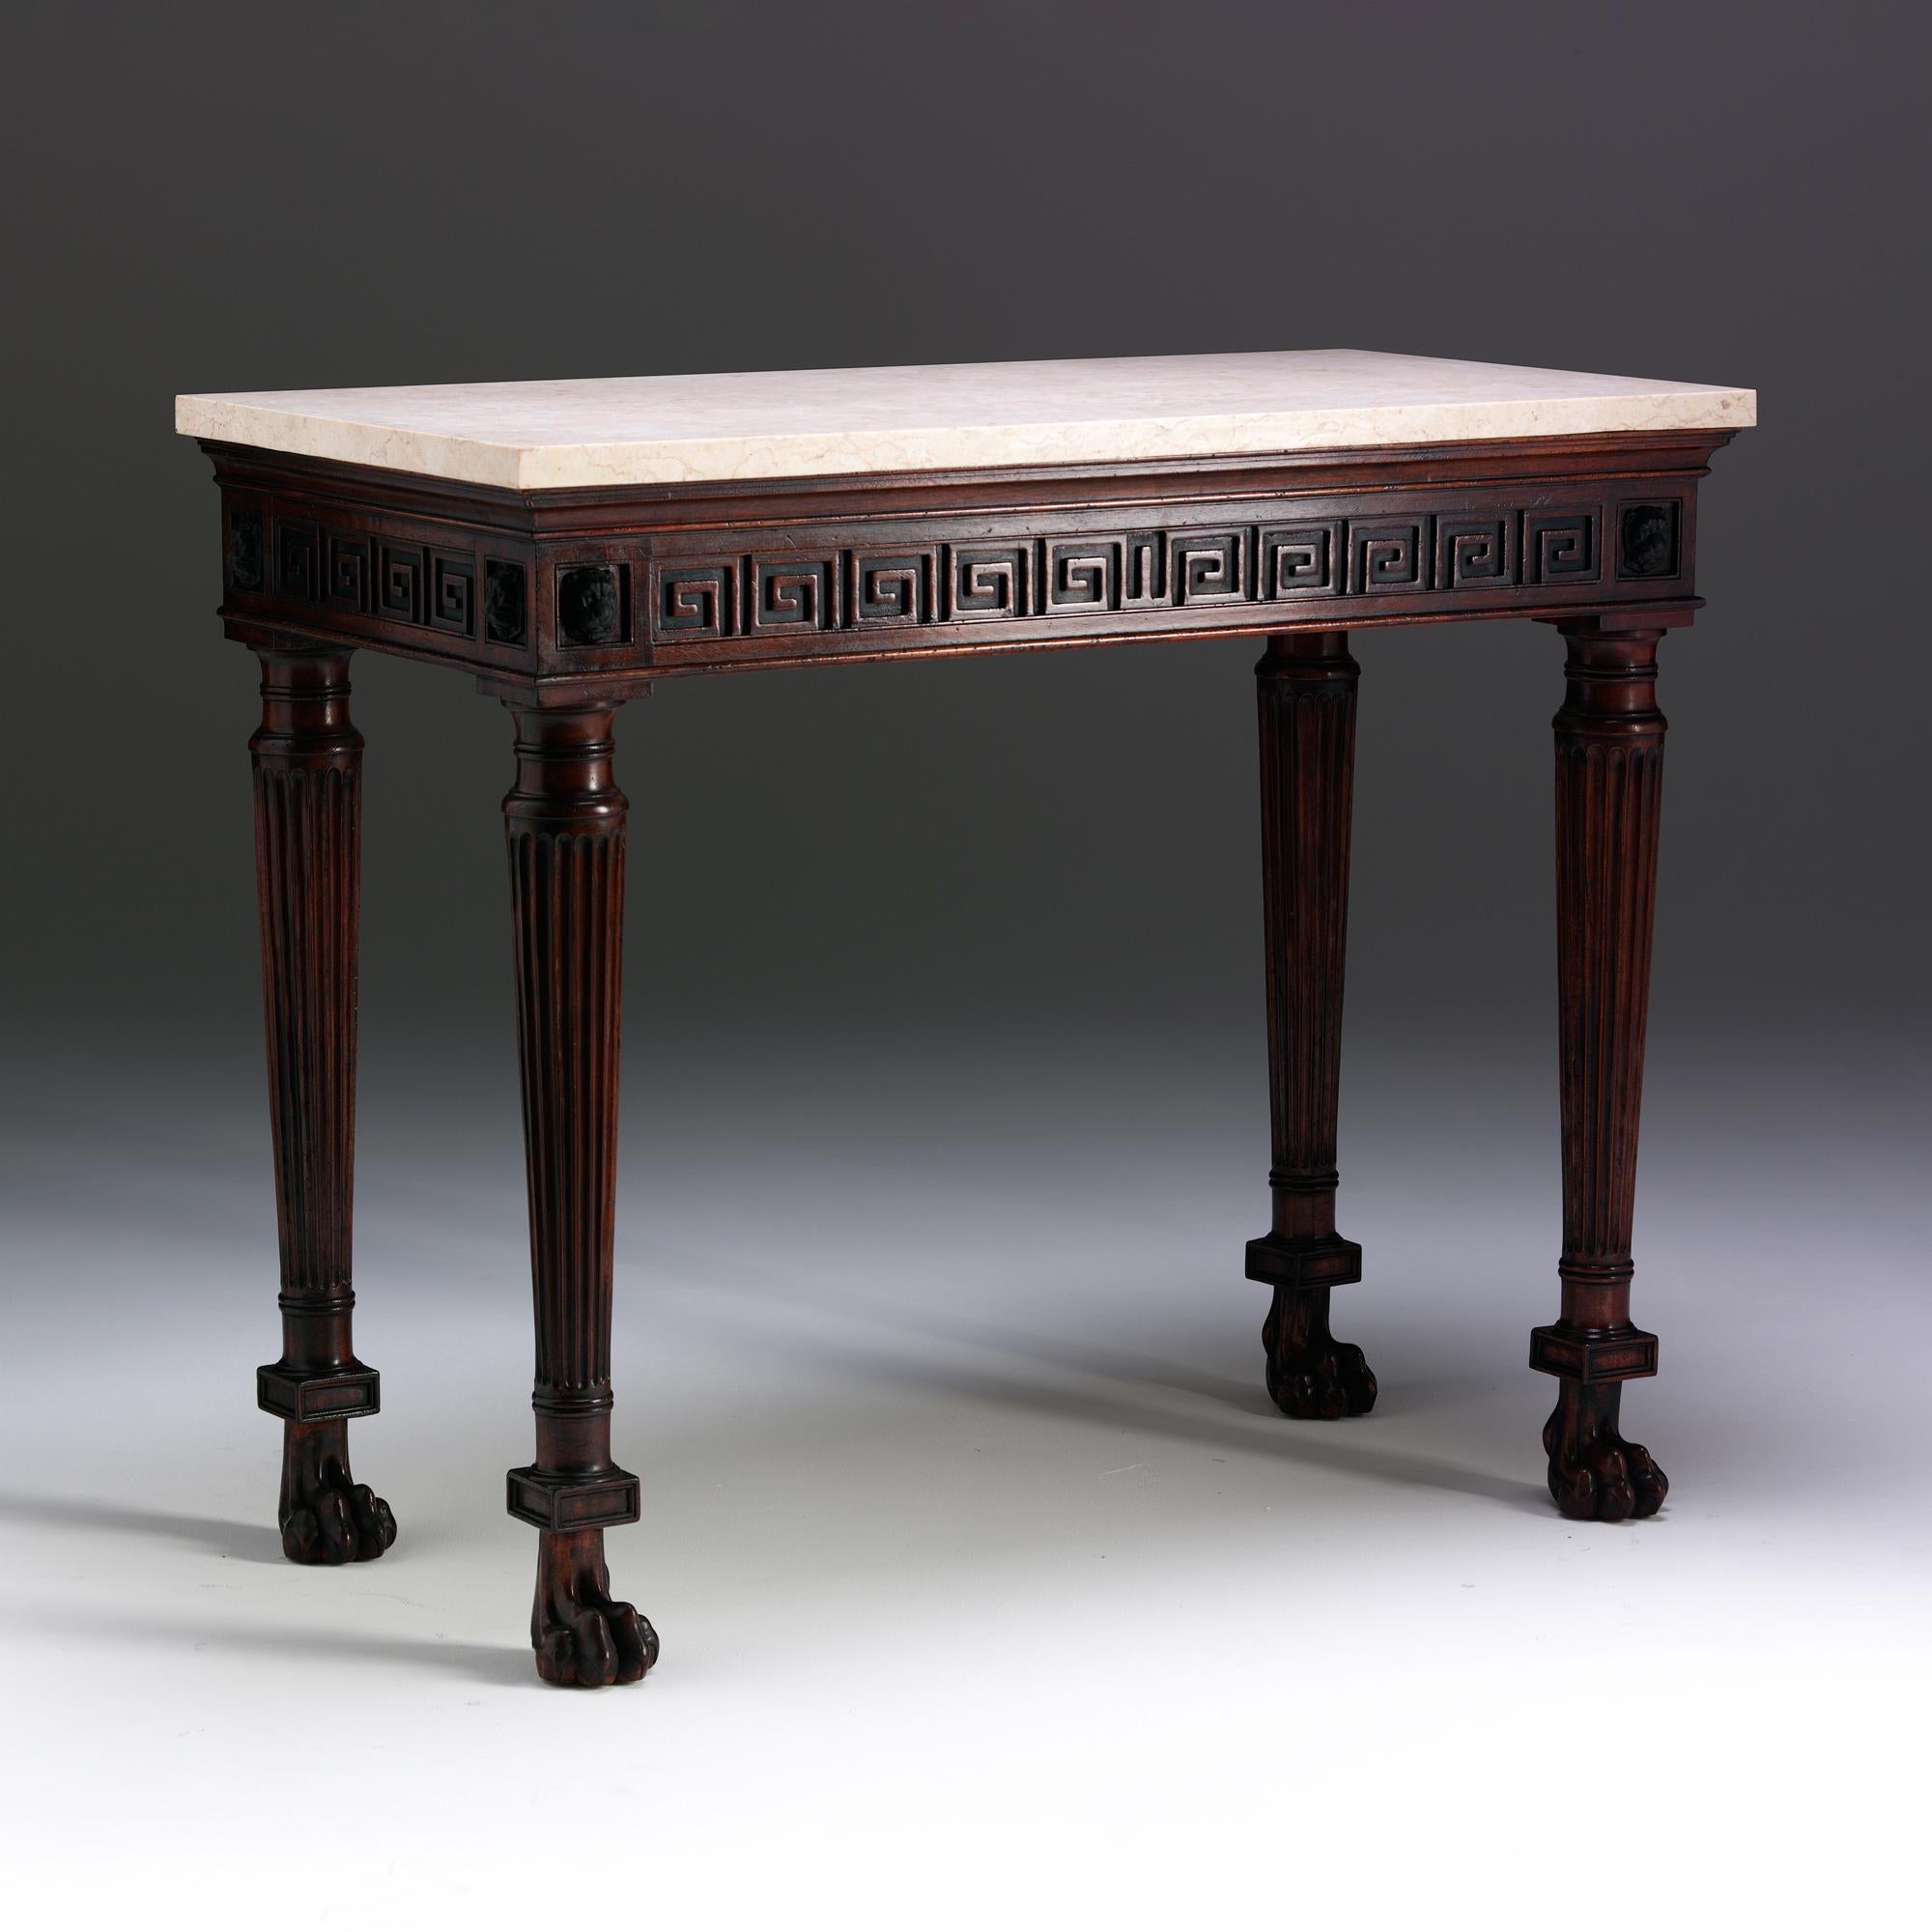 Cette table console affiche la meilleure inspiration classique de la période Regency. Dans cet exemple, le plateau en marbre blanc repose au-dessus d'une frise moulée sculptée d'un motif de clé grecque aveugle, flanquée de masques à tête de léopard